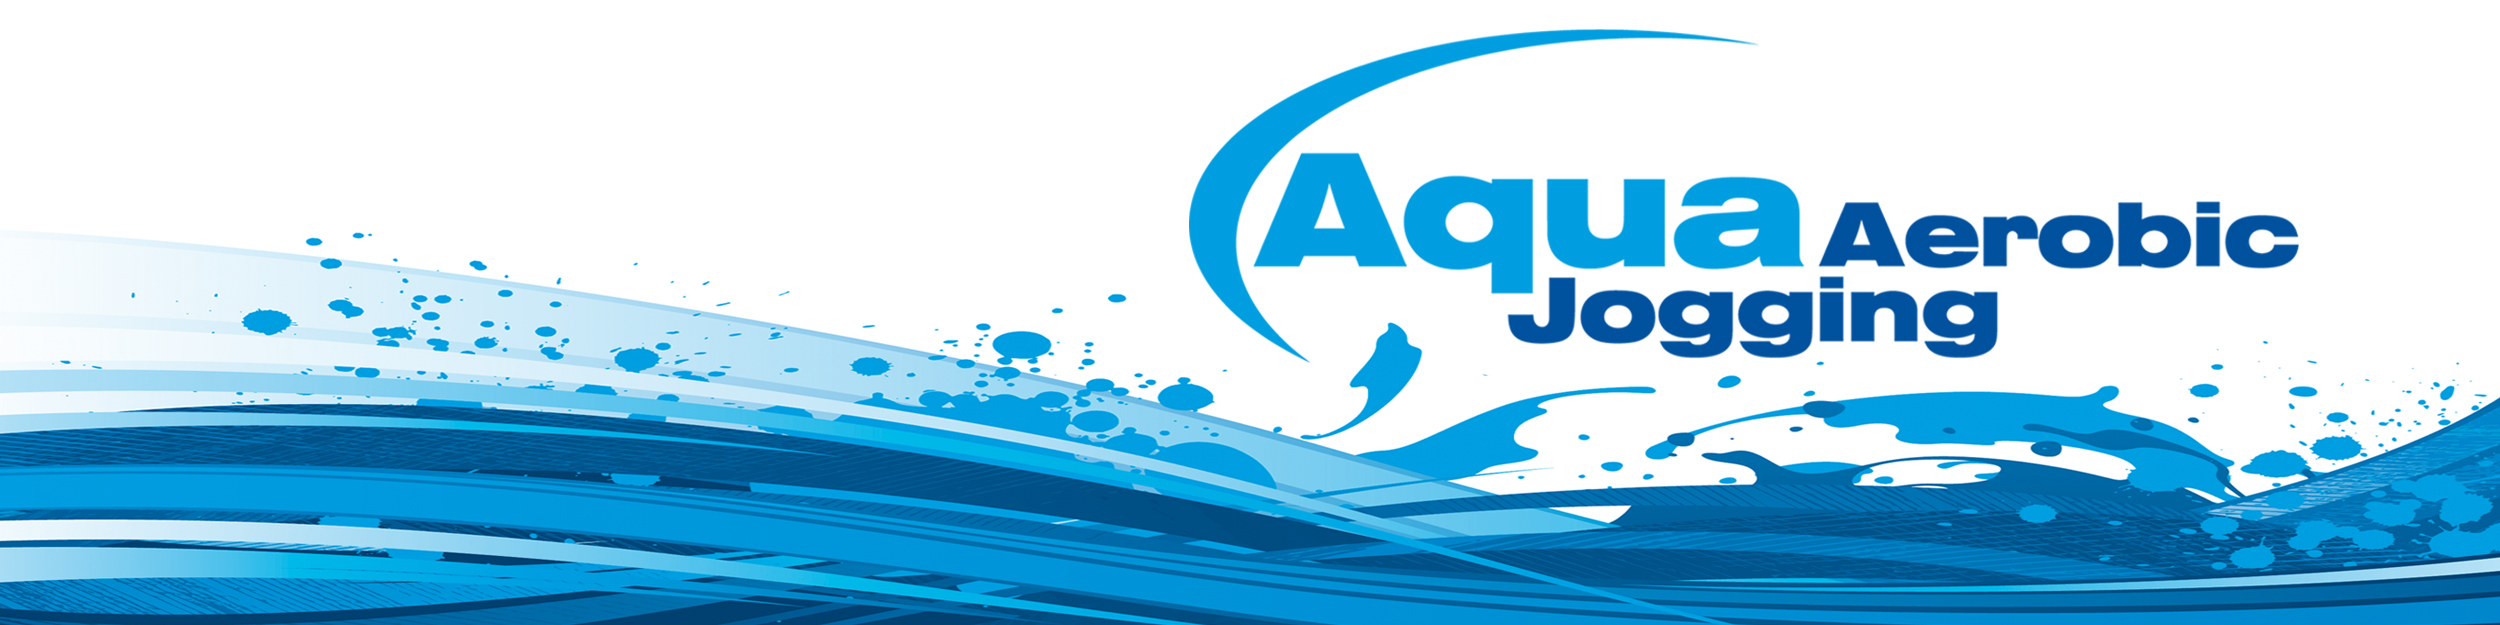 Aqua Aerobic Jogging